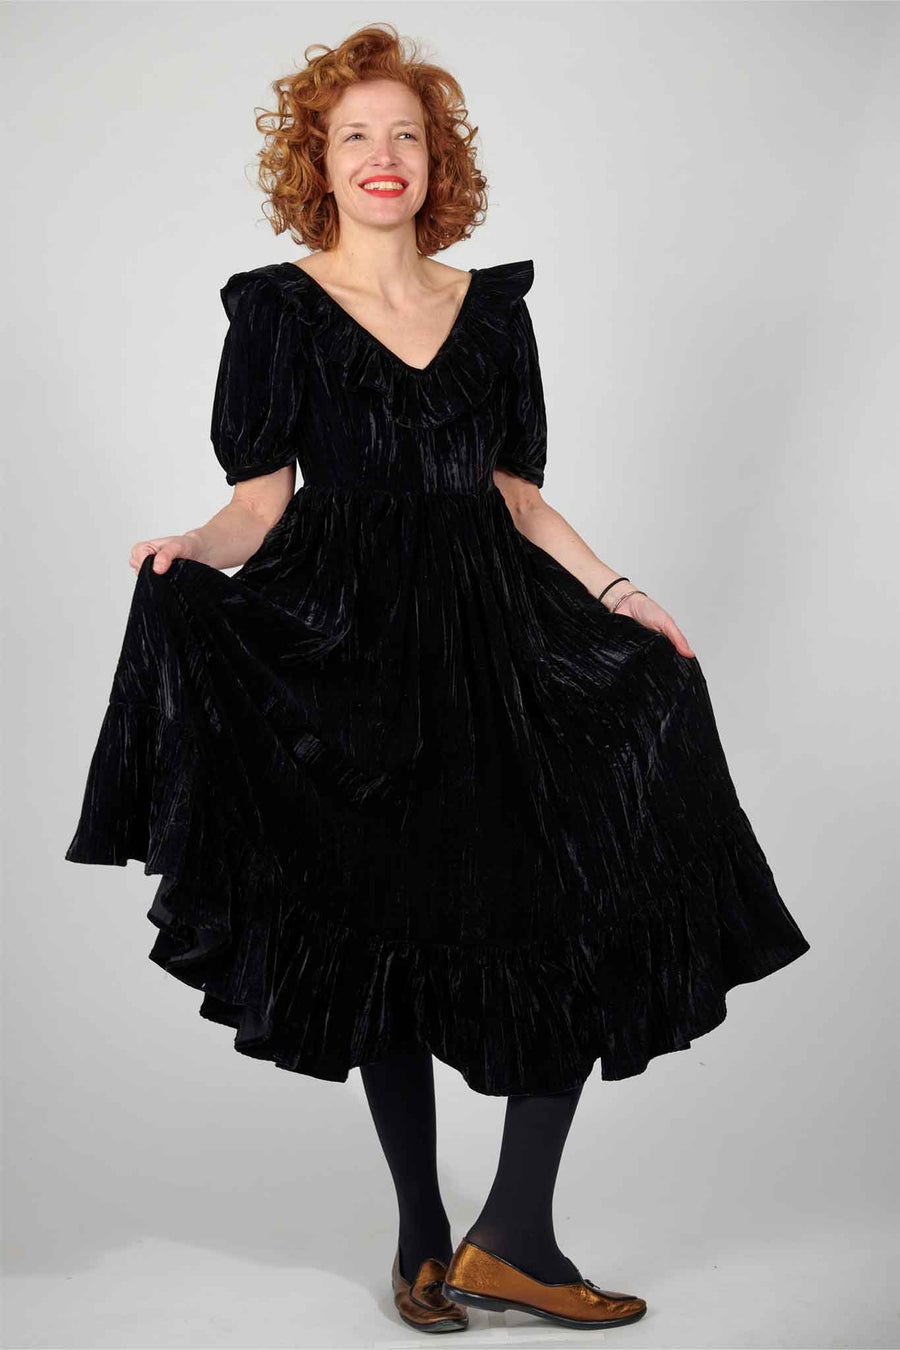 BATSHEVA - Ruffle May Dress in Black Velvet